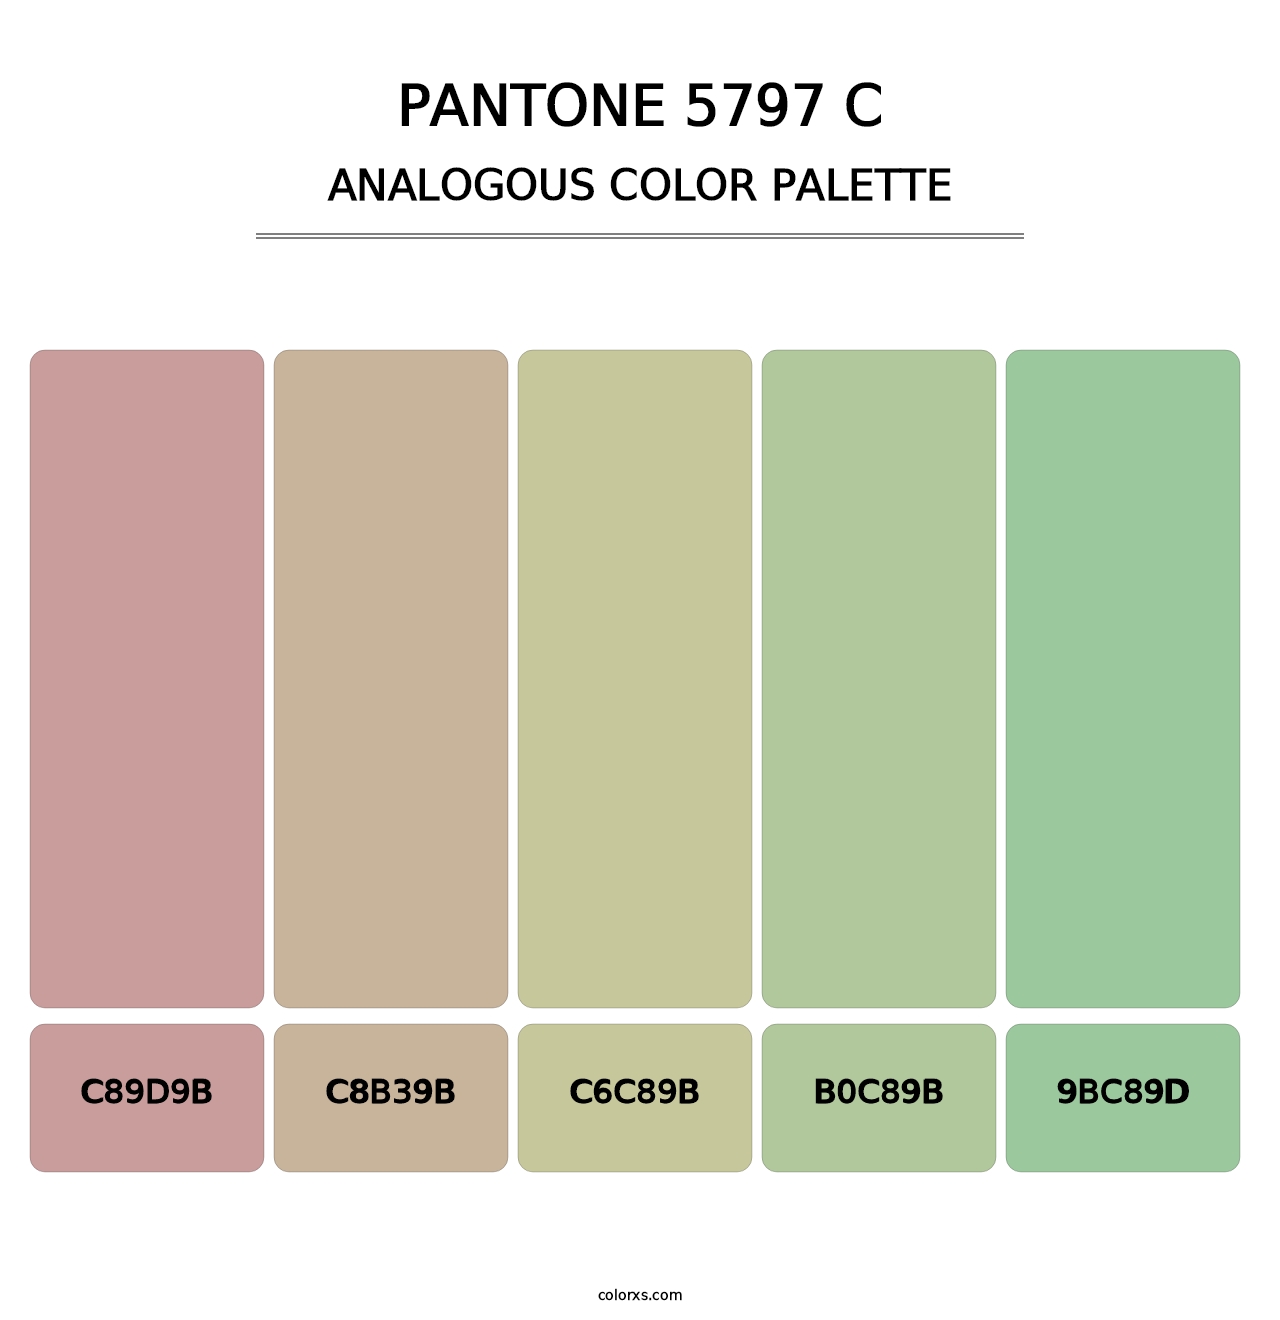 PANTONE 5797 C - Analogous Color Palette